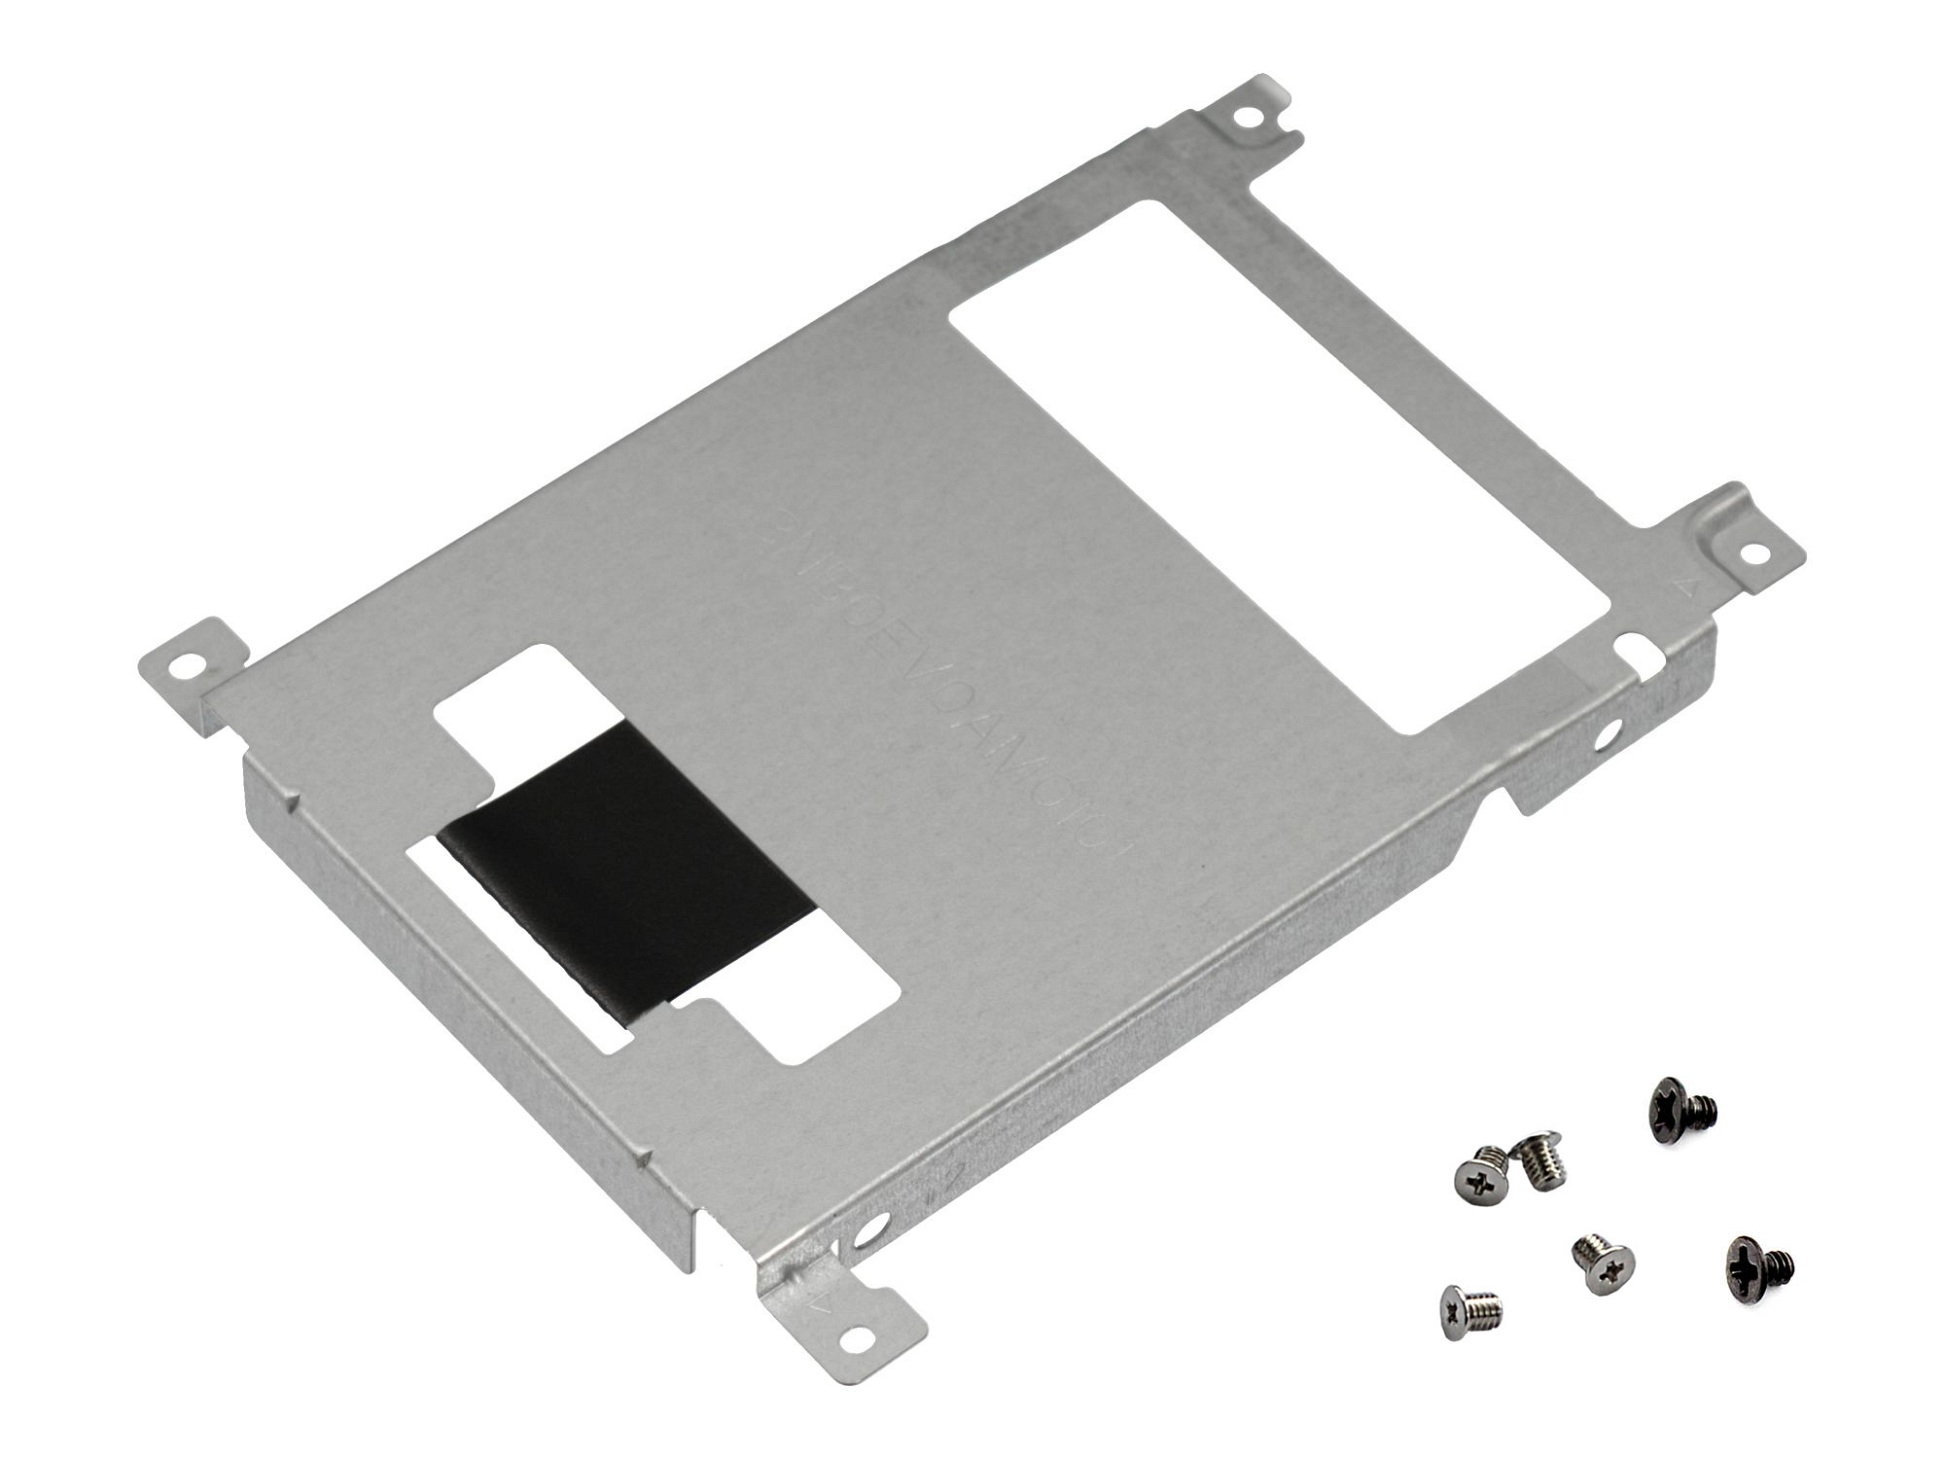 Festplatten-Einbaurahmen für den 1. Festplatten Schacht inkl. Schrauben Original für Asus VivoBook 14 F441MA